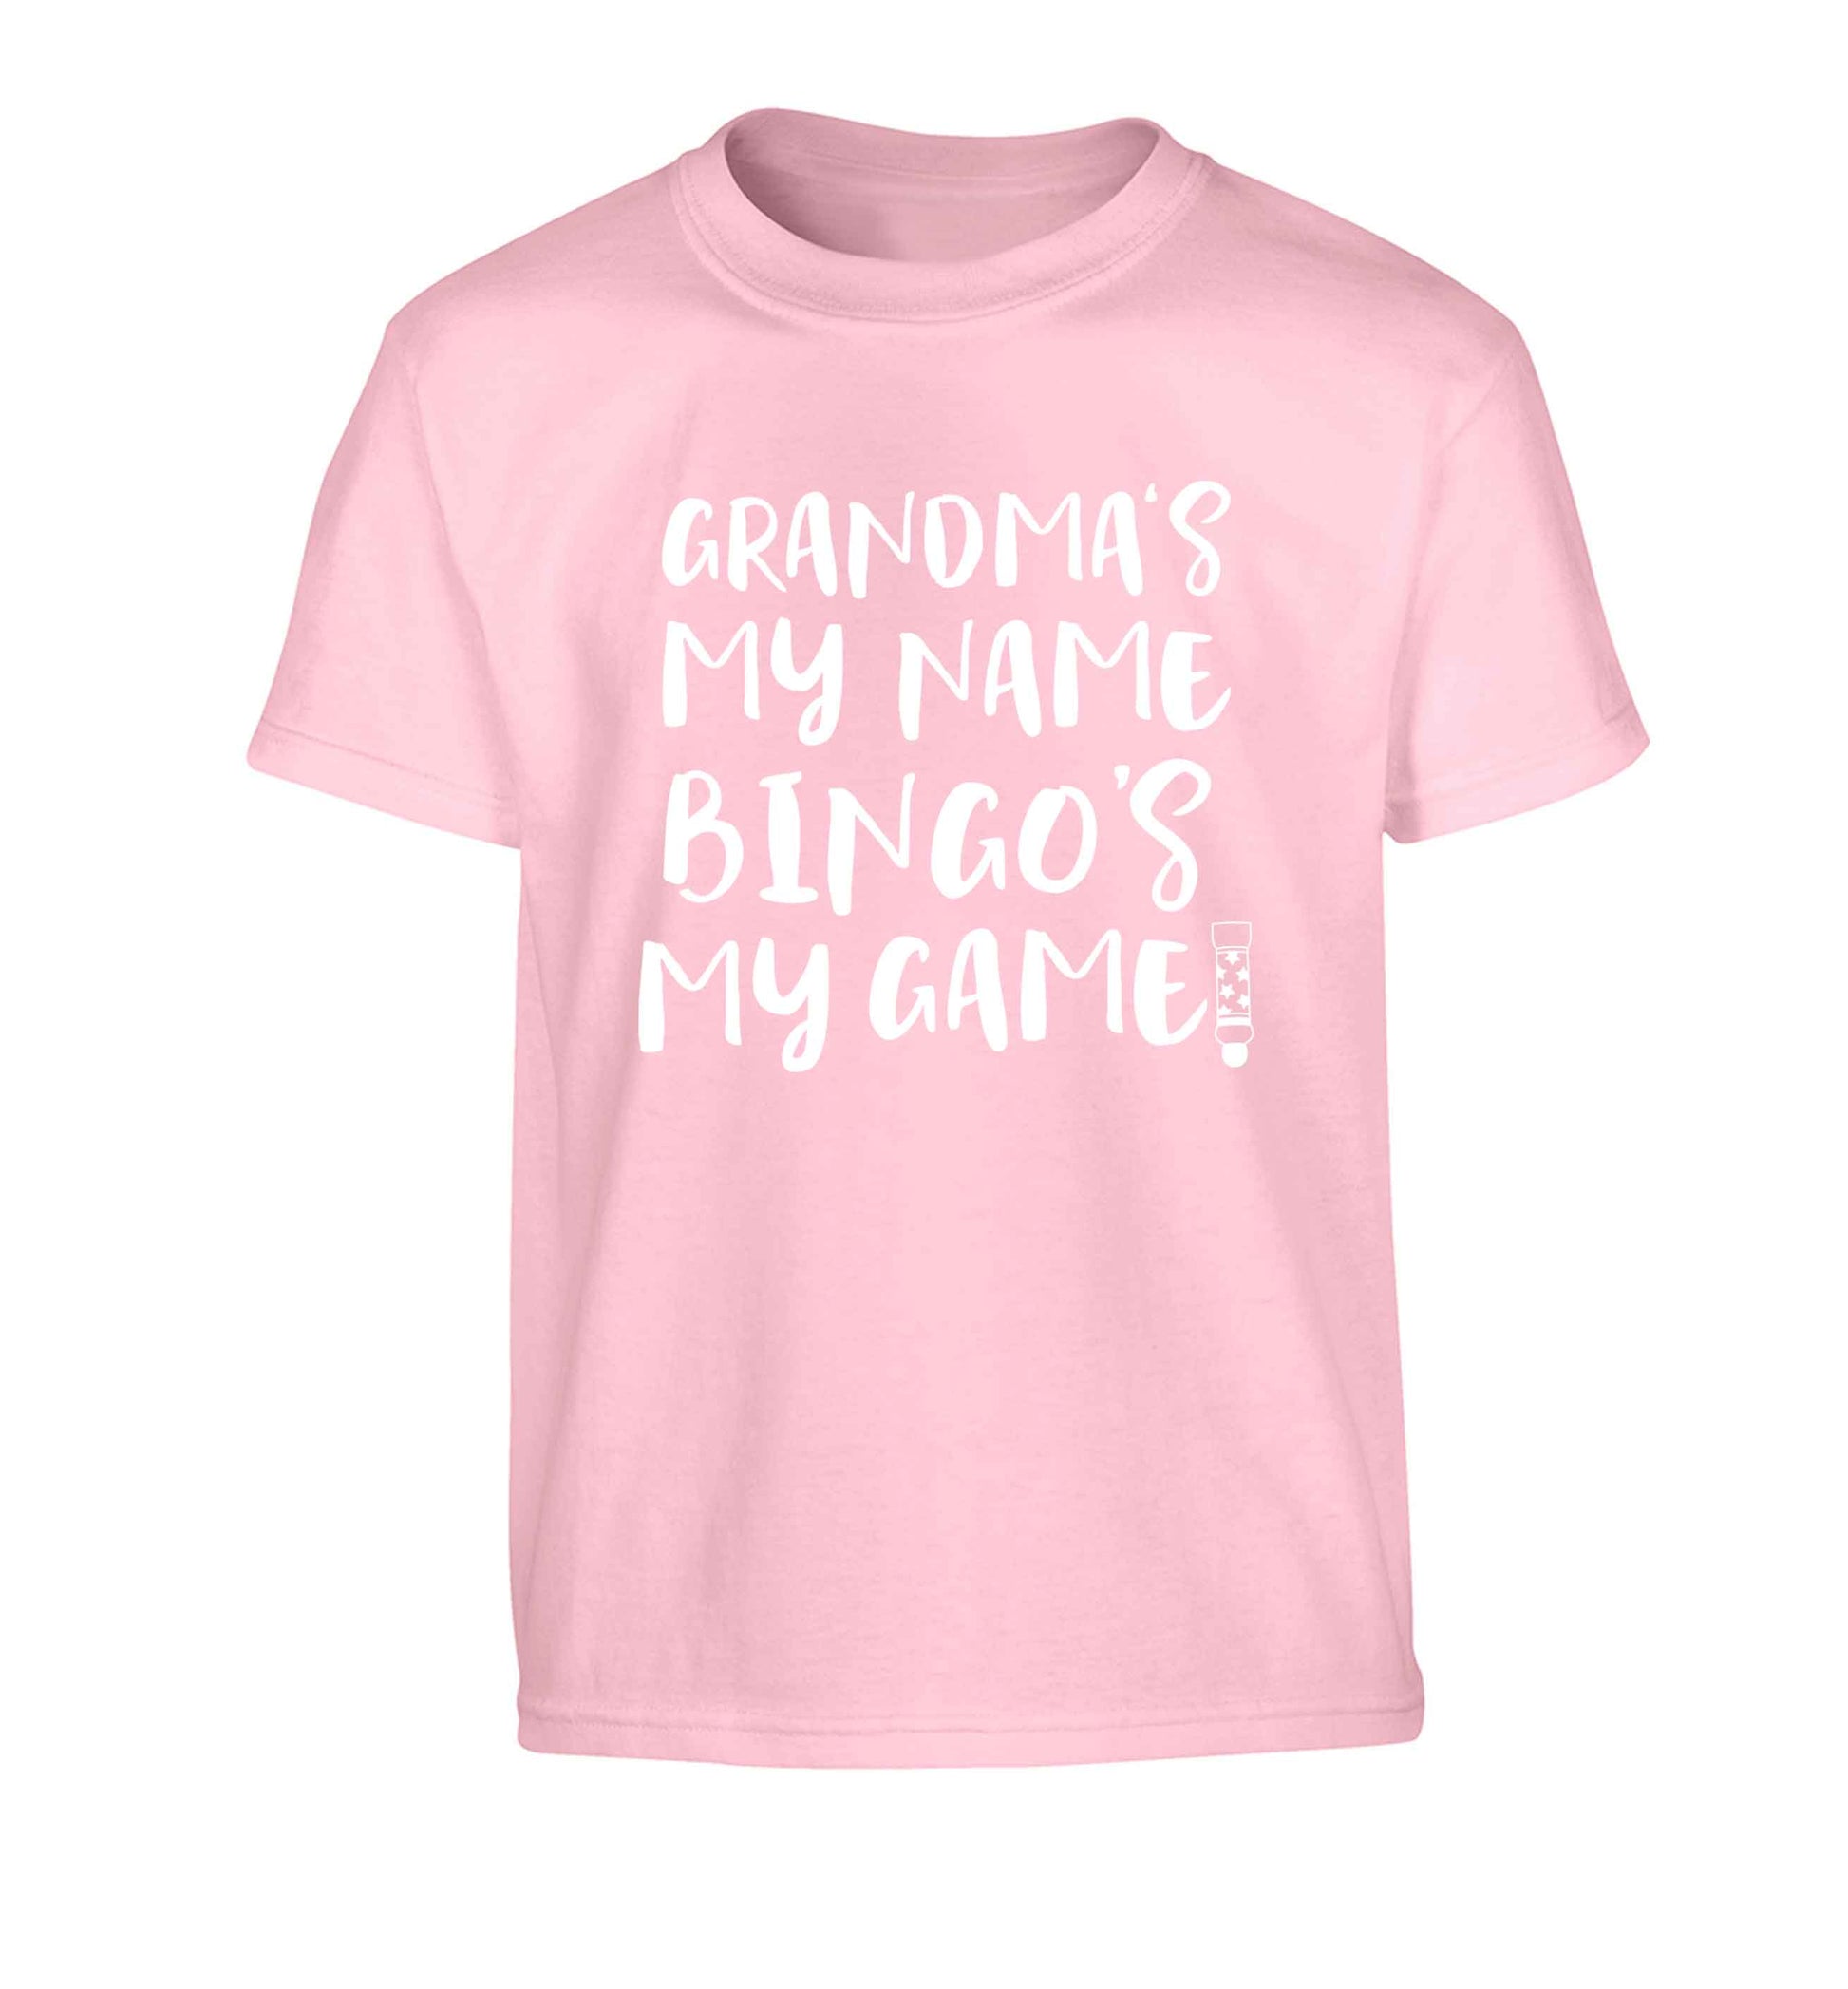 Grandma's my name bingo's my game! Children's light pink Tshirt 12-13 Years